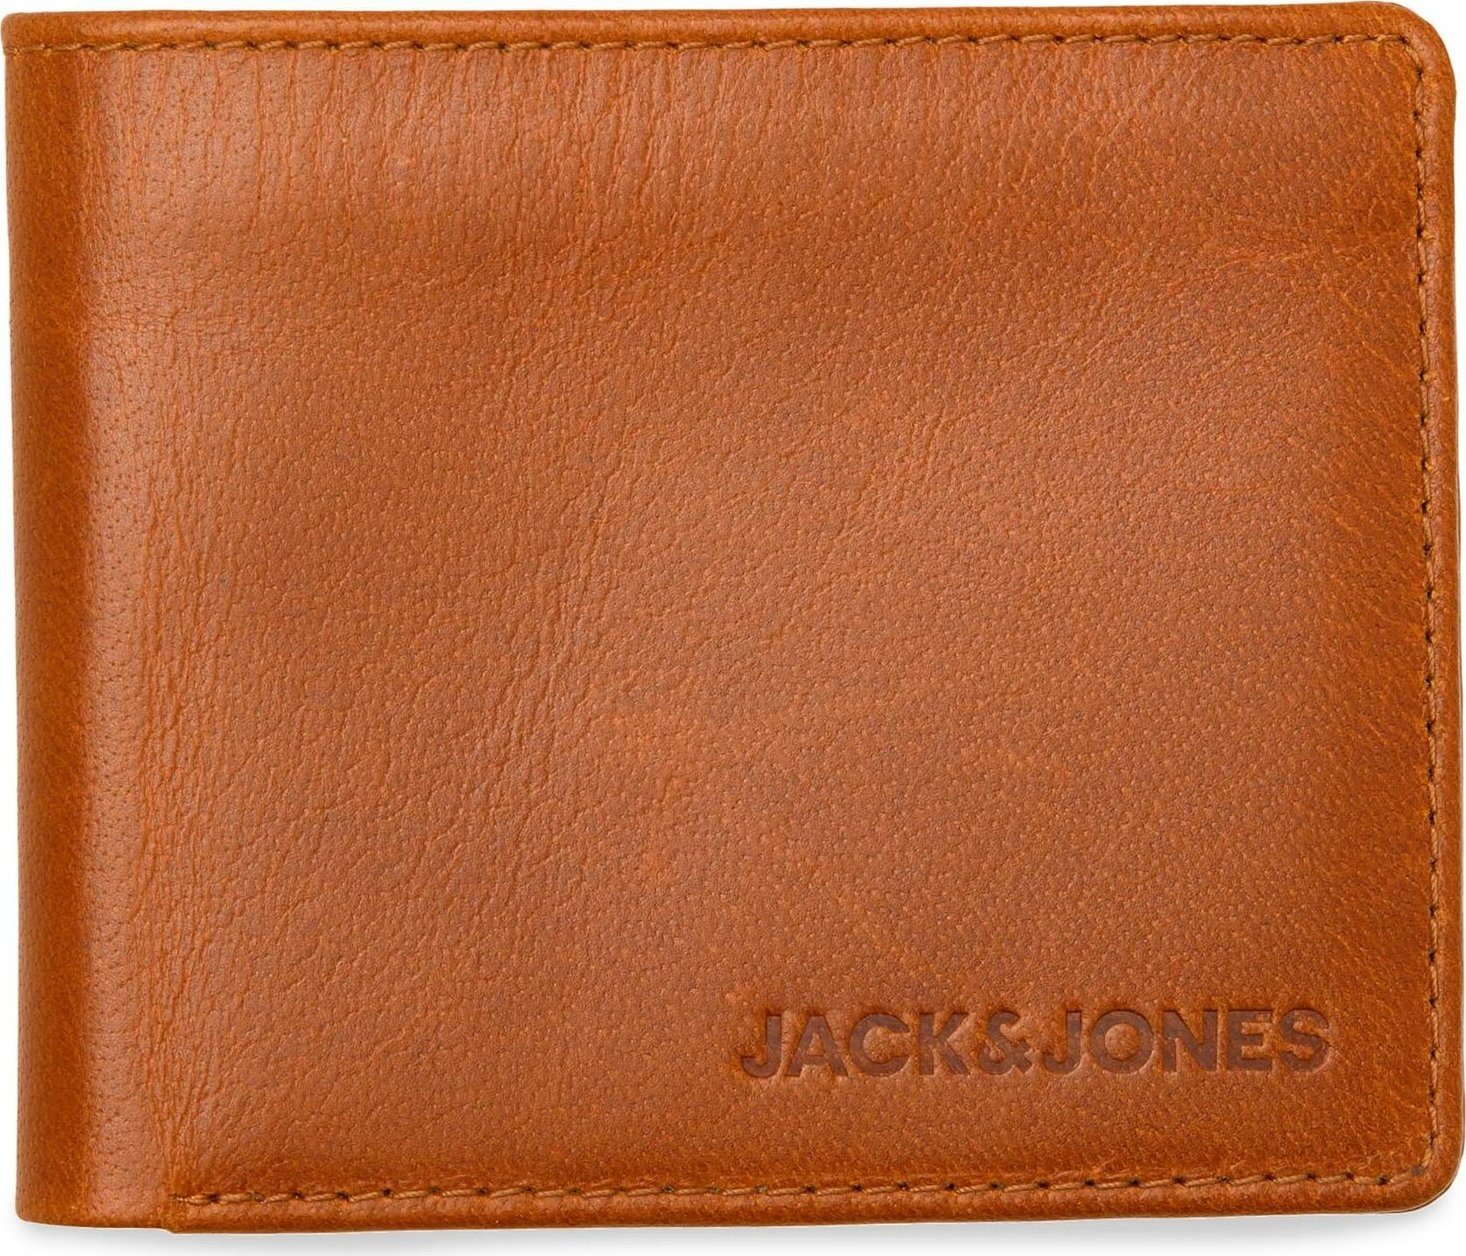 Pánská peněženka Jack&Jones Side 12228786 Cognac